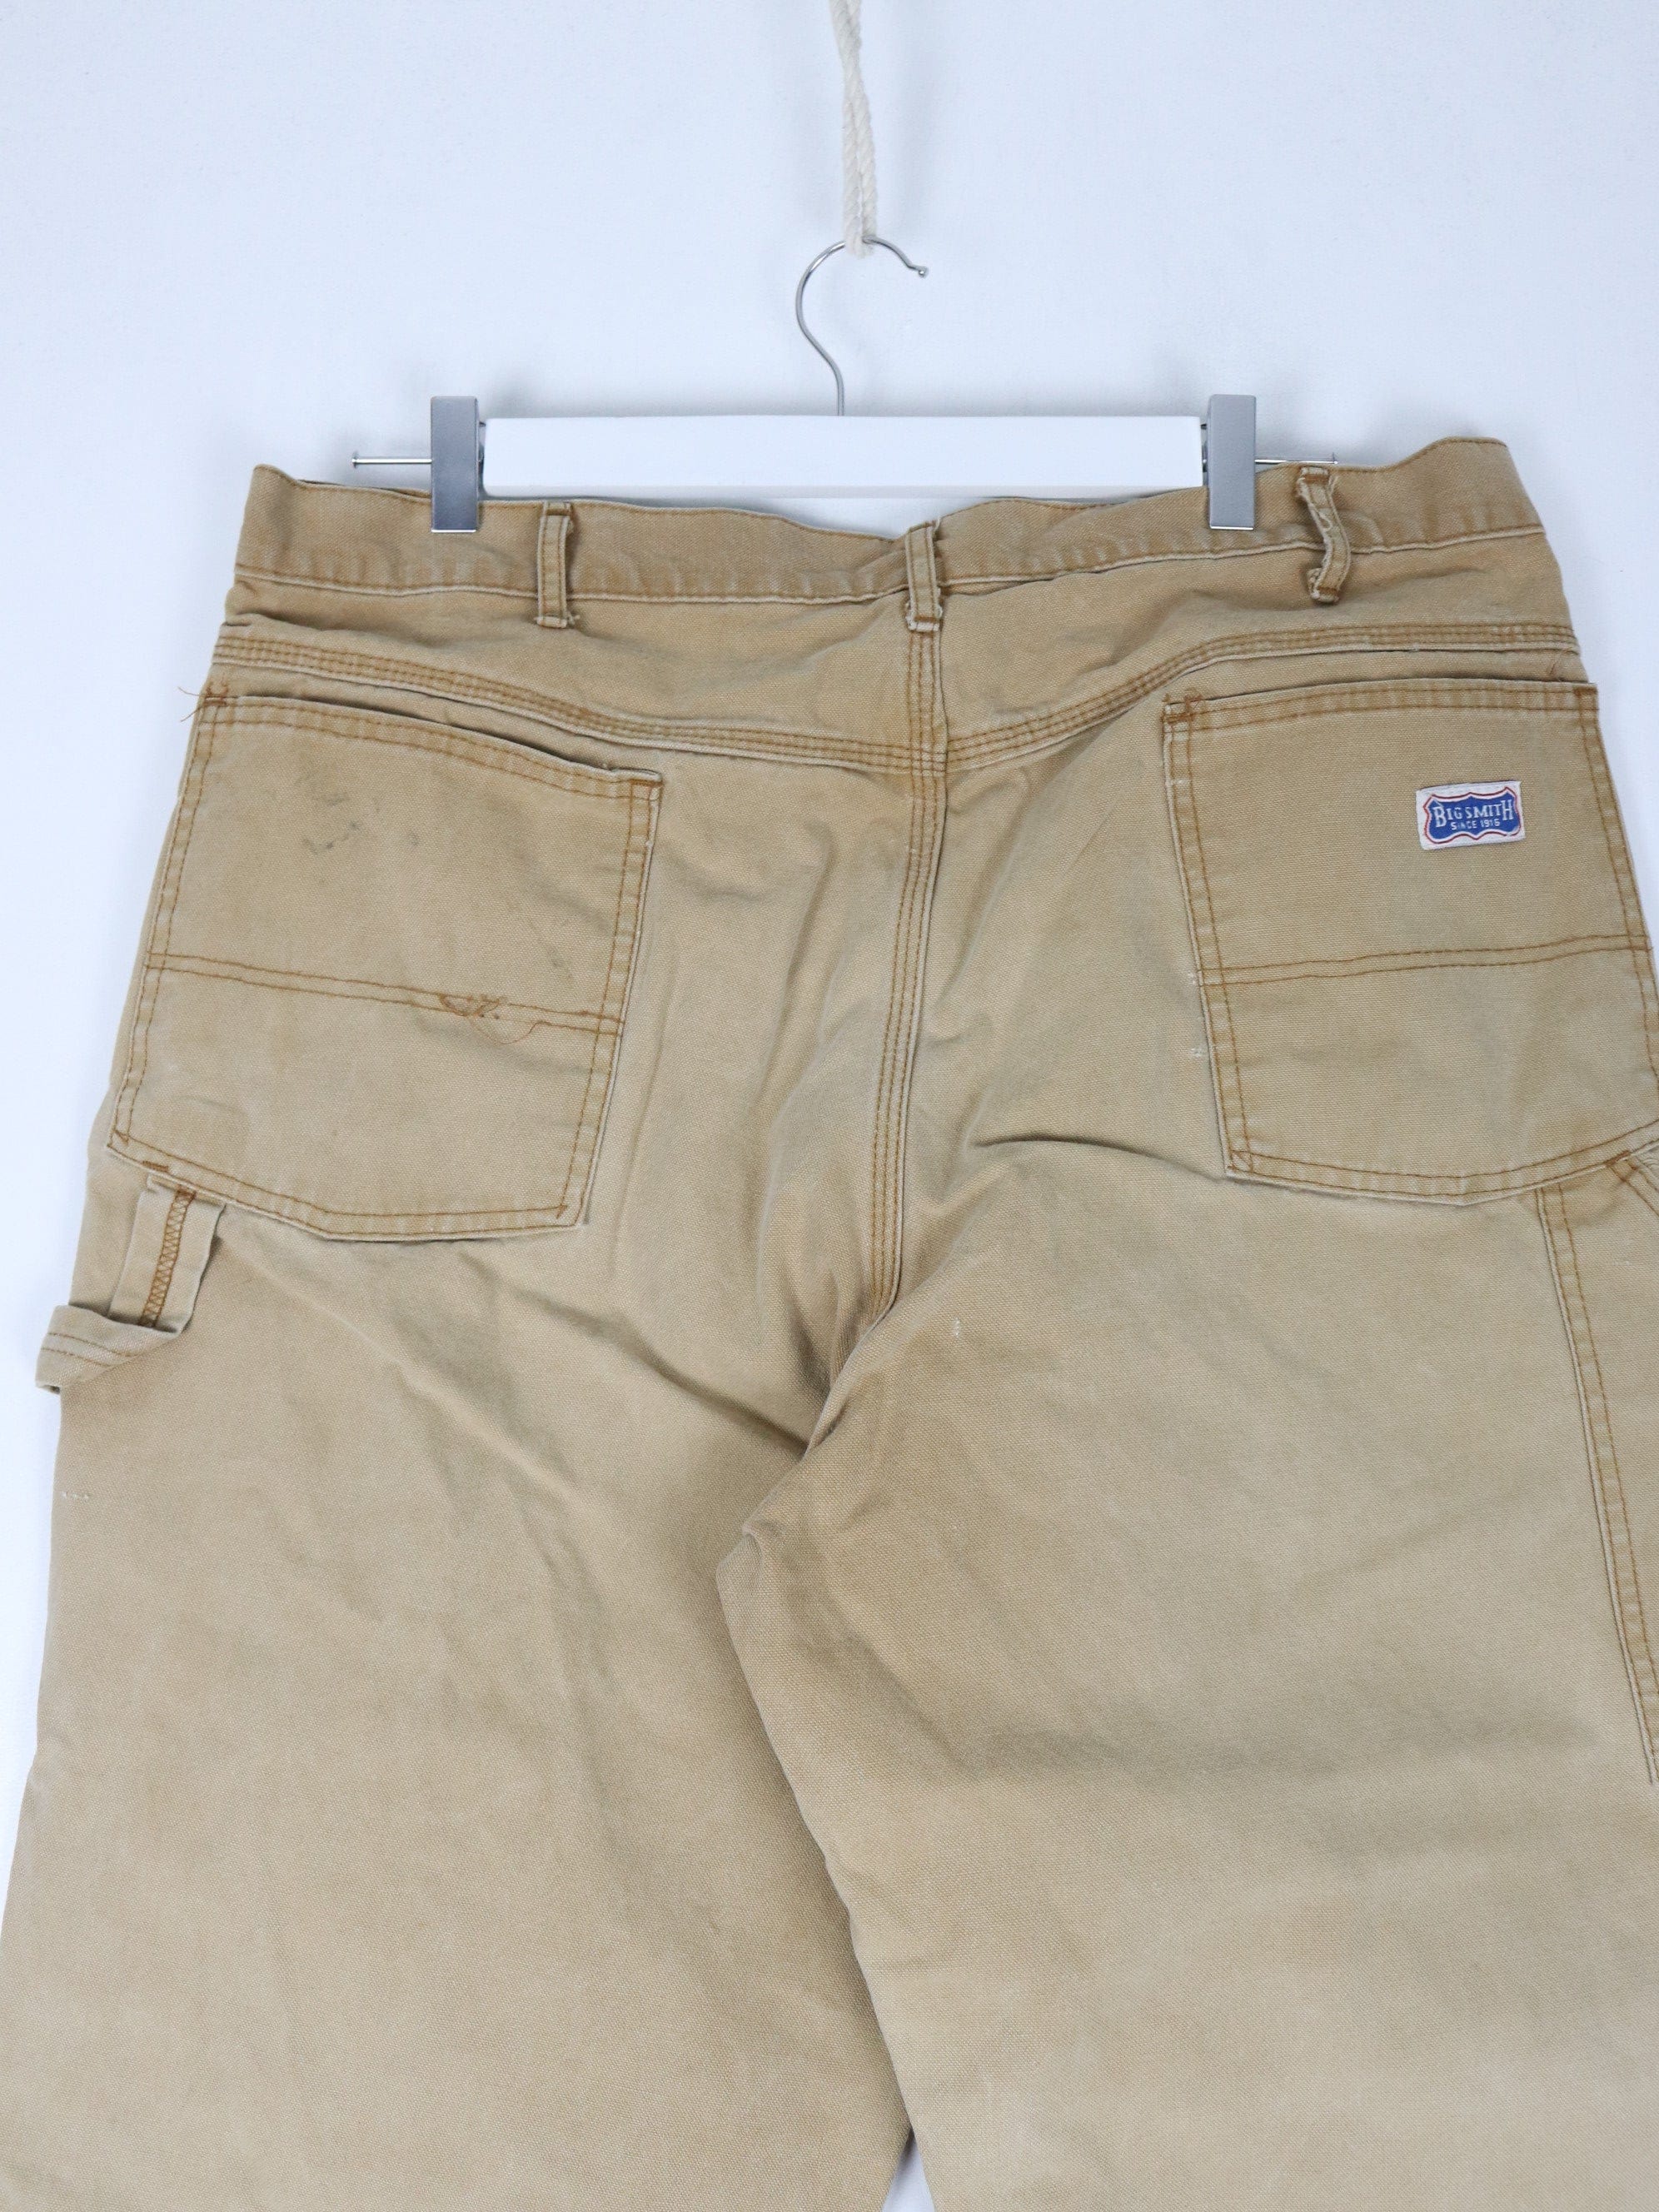 Men's Vintage Carhartt Double Knee Brown Work Pants Size 38x30